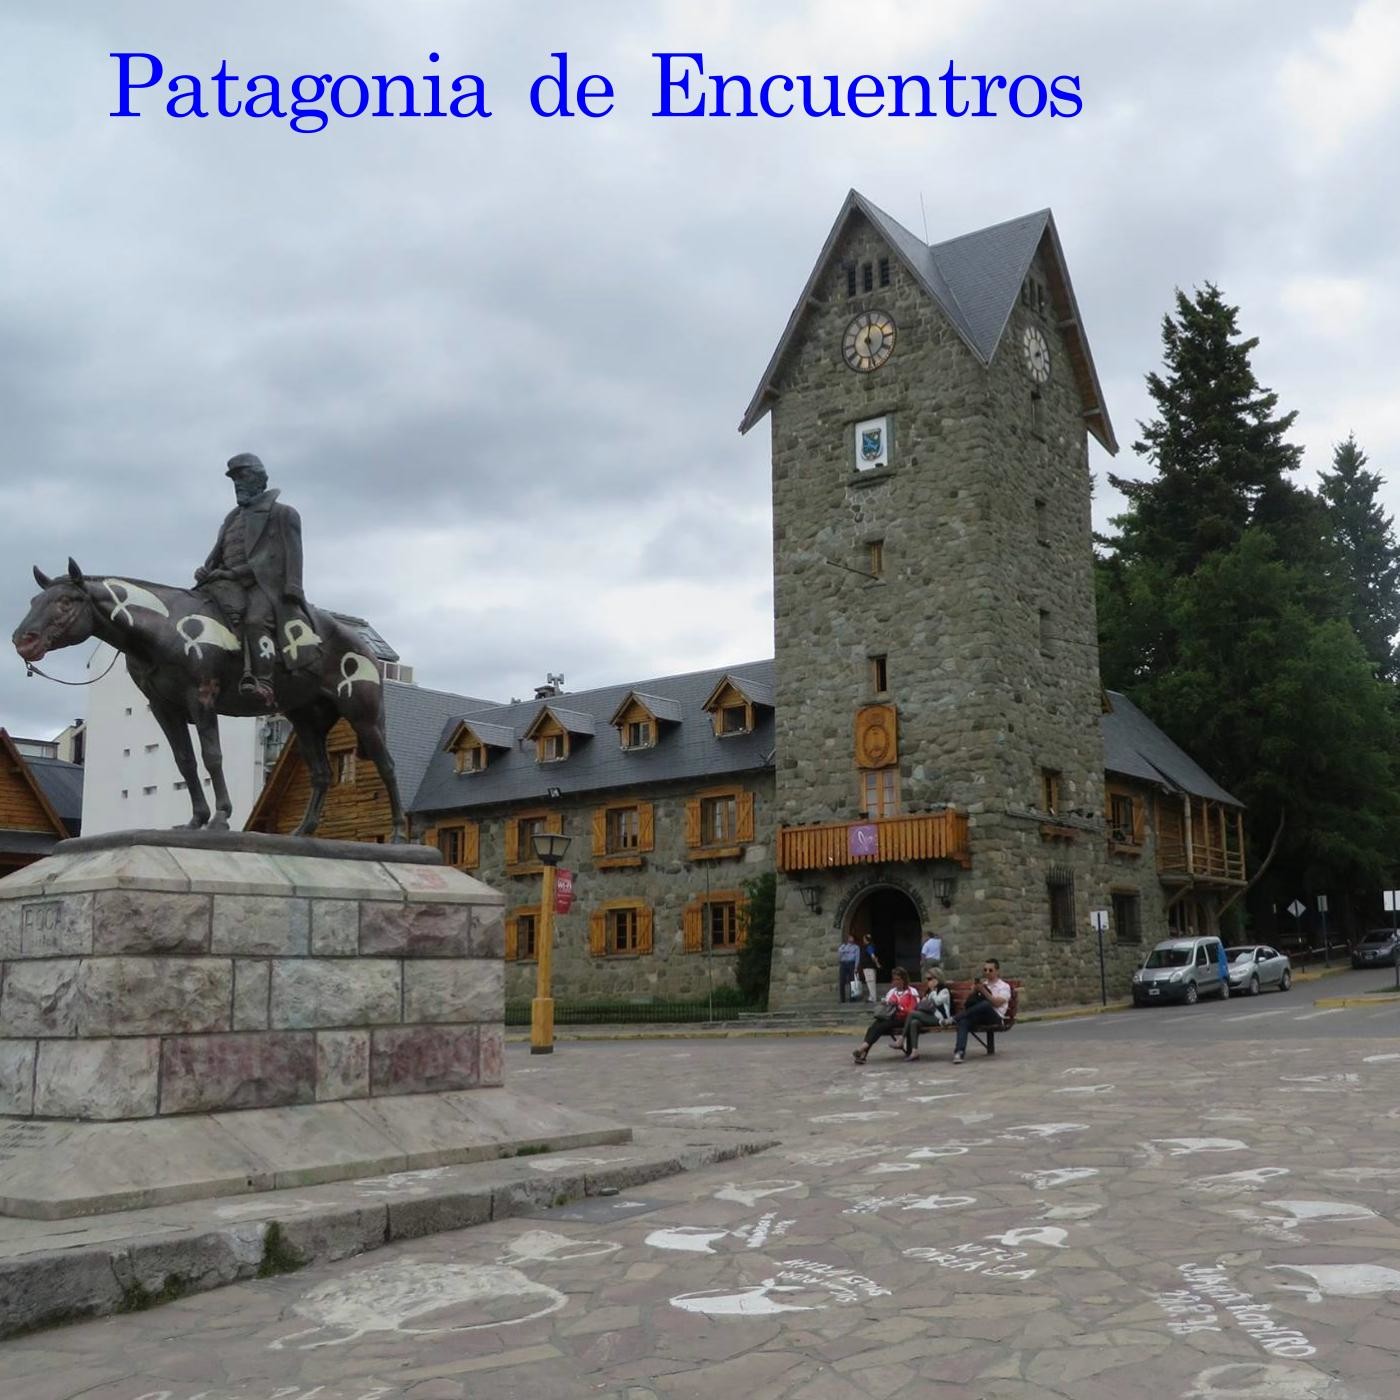 Patagonia de Encuentros